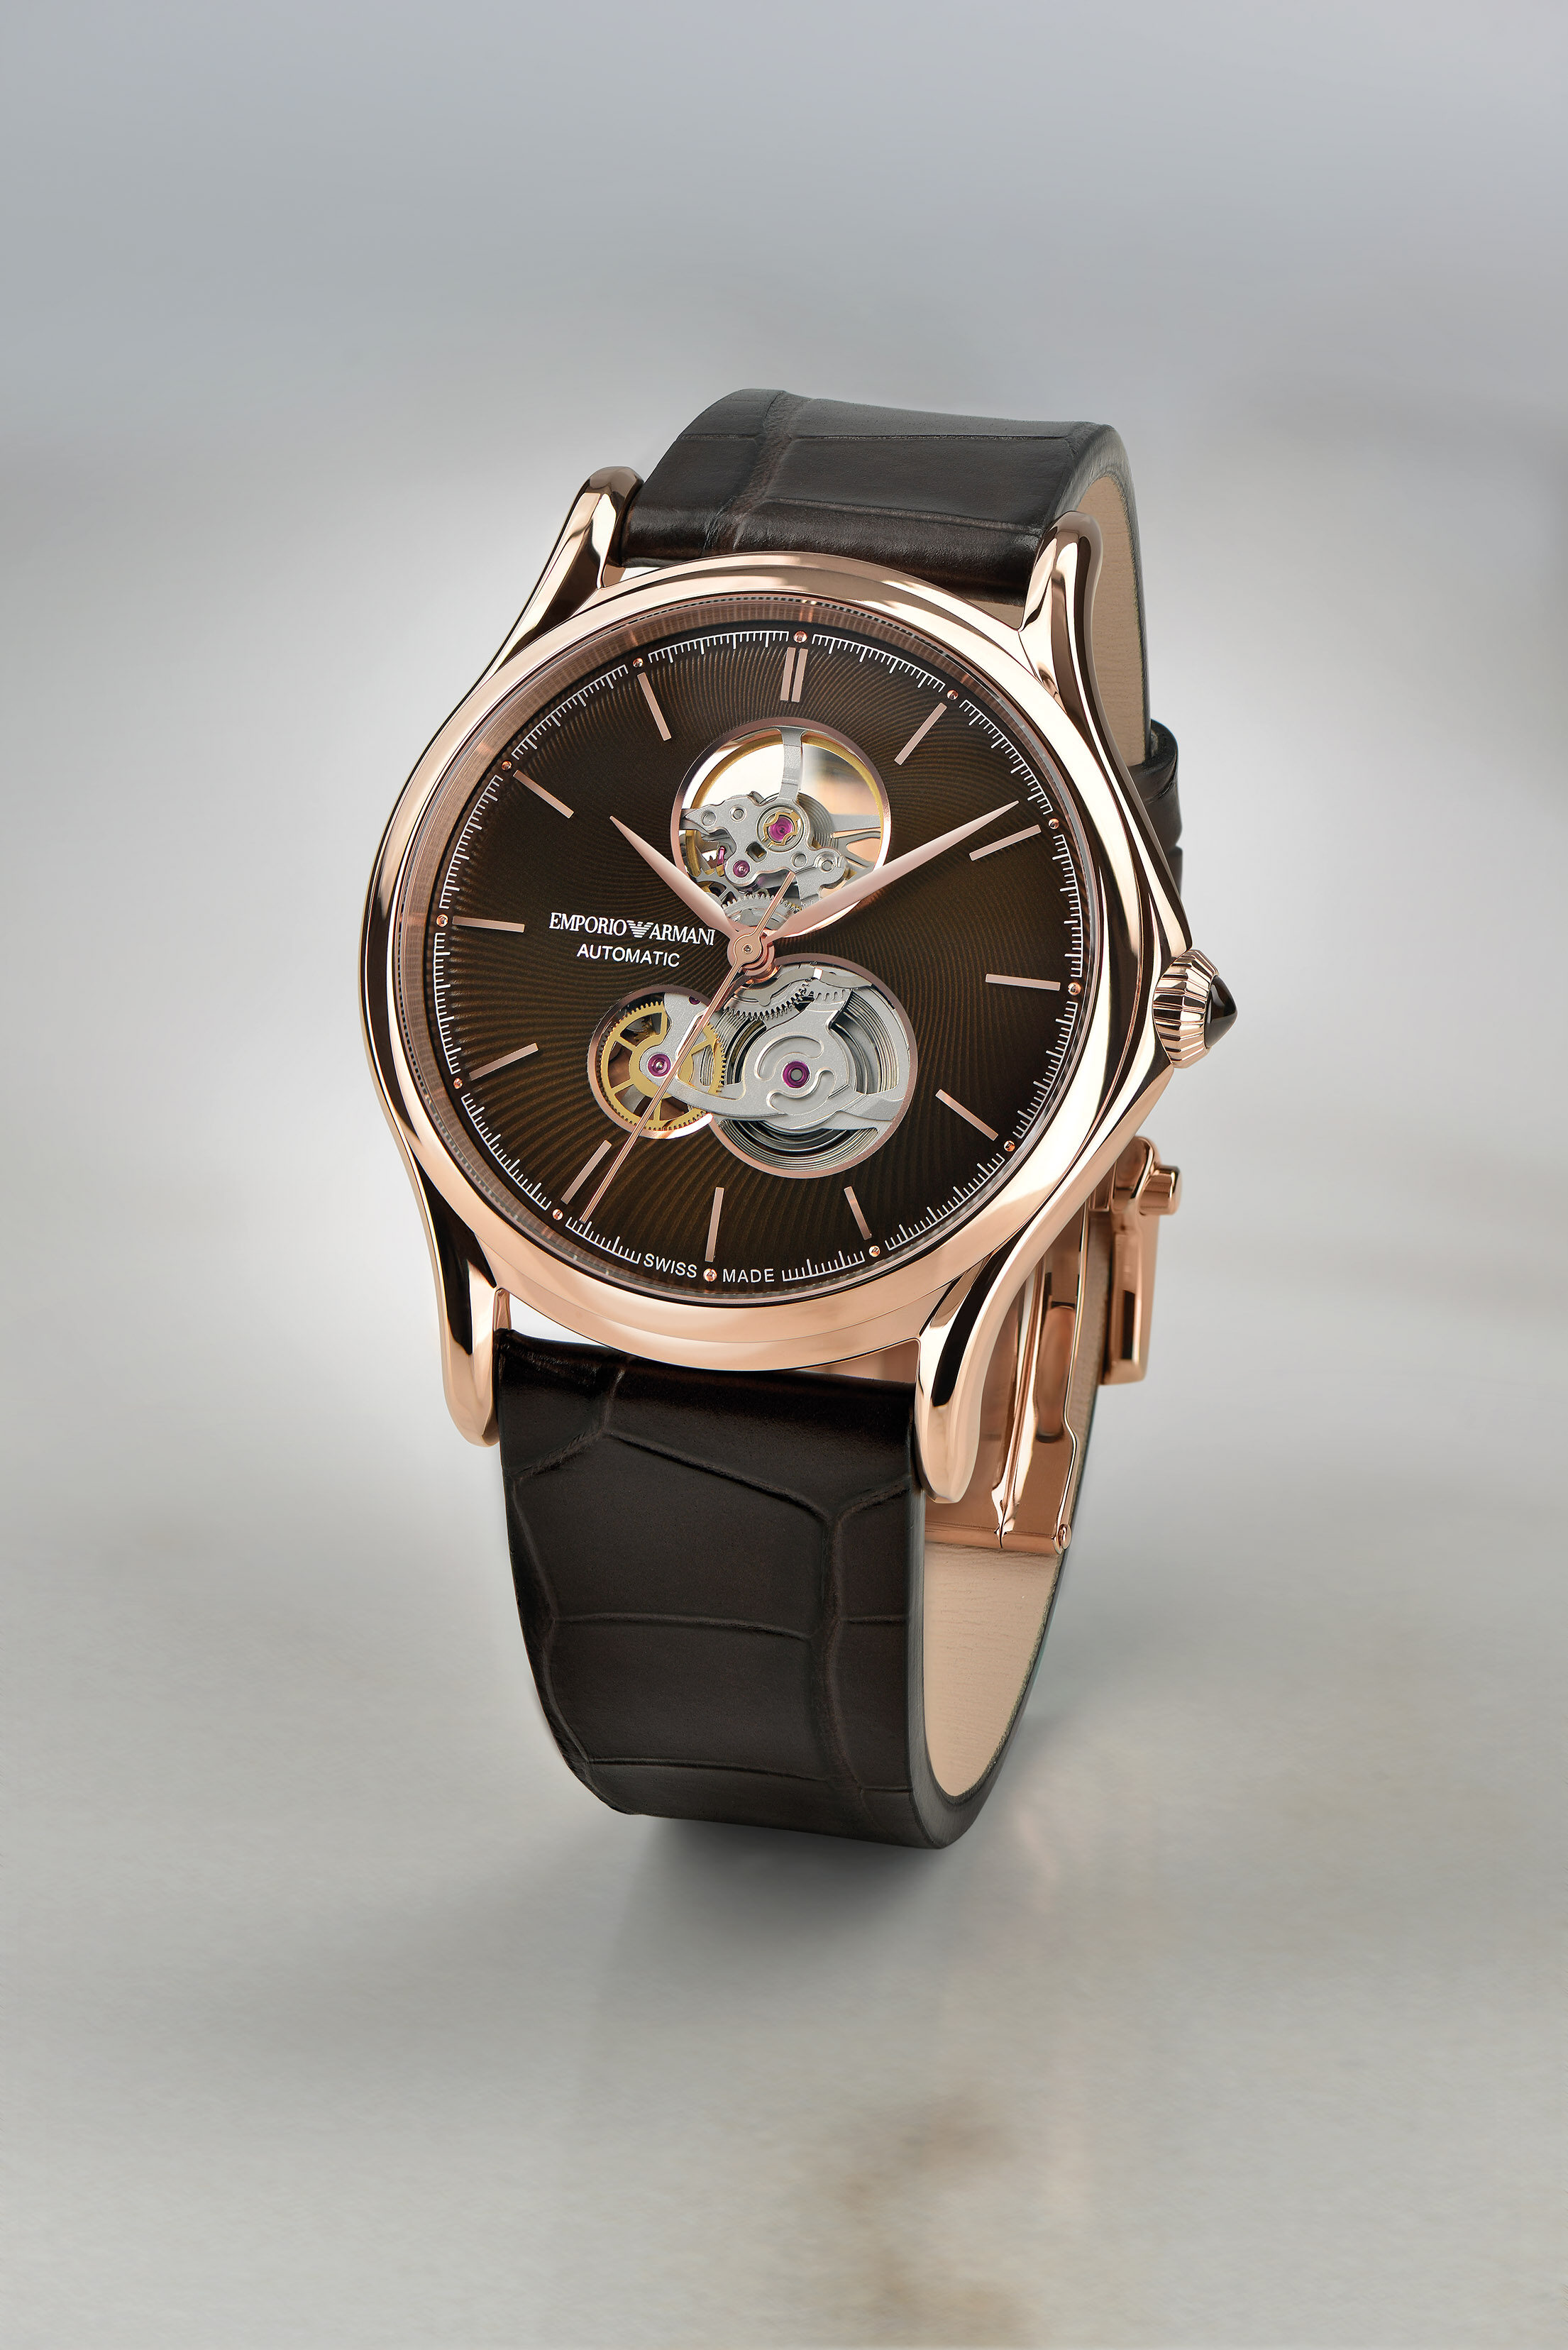 喜愛經典的你亦可選擇Classic 可見式平衡擺輪自動腕錶系列，今季以棕色為